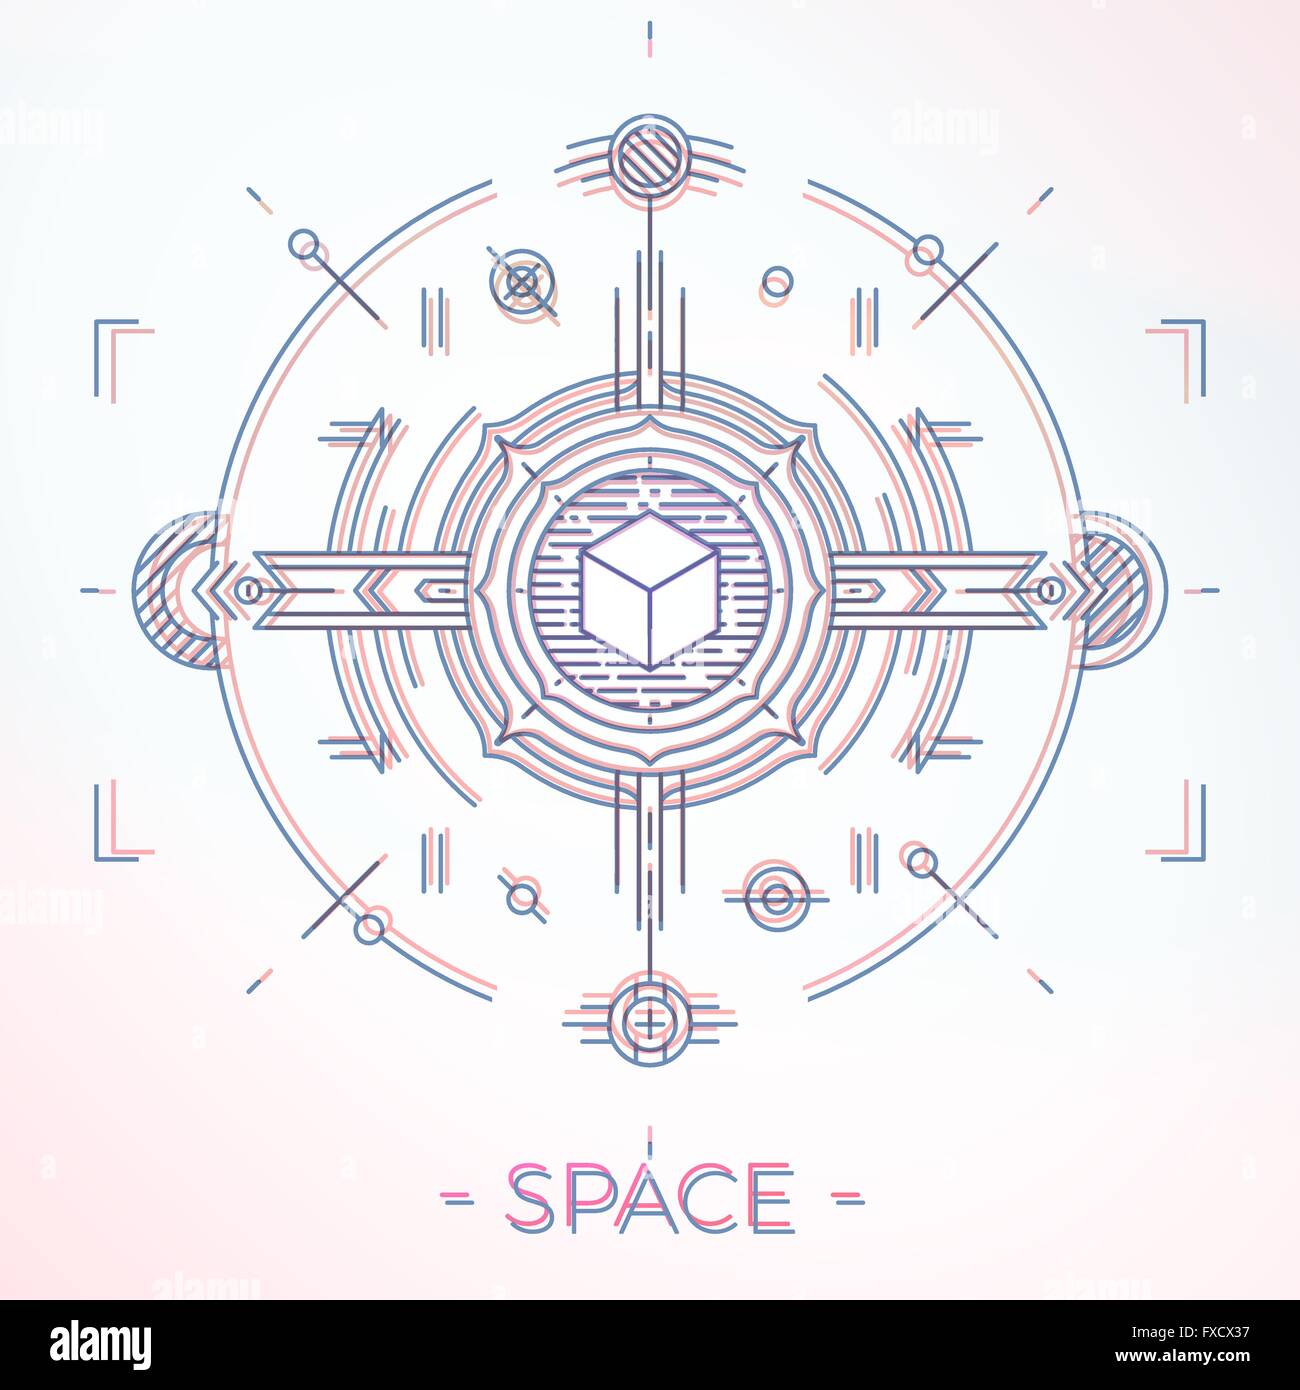 Colorful line geometric futuristic graphic design. Sci-Fi astro space illustration concept. Stock Vector